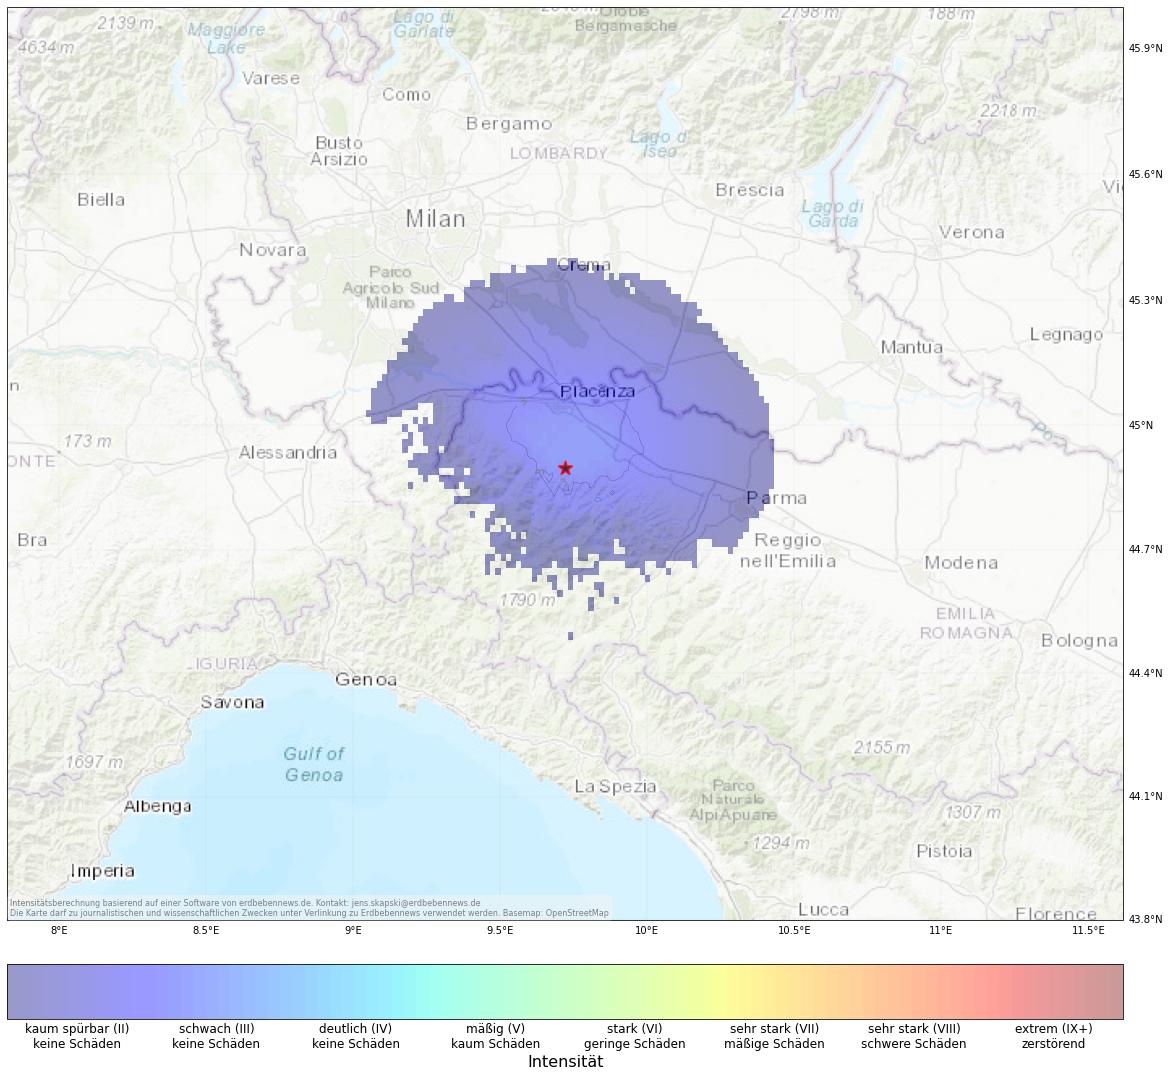 Berechnete Intensität (ShakeMap) des Erdbebens der Stärke 3.7 am 13. Oktober, 9:25 Uhr in Italien